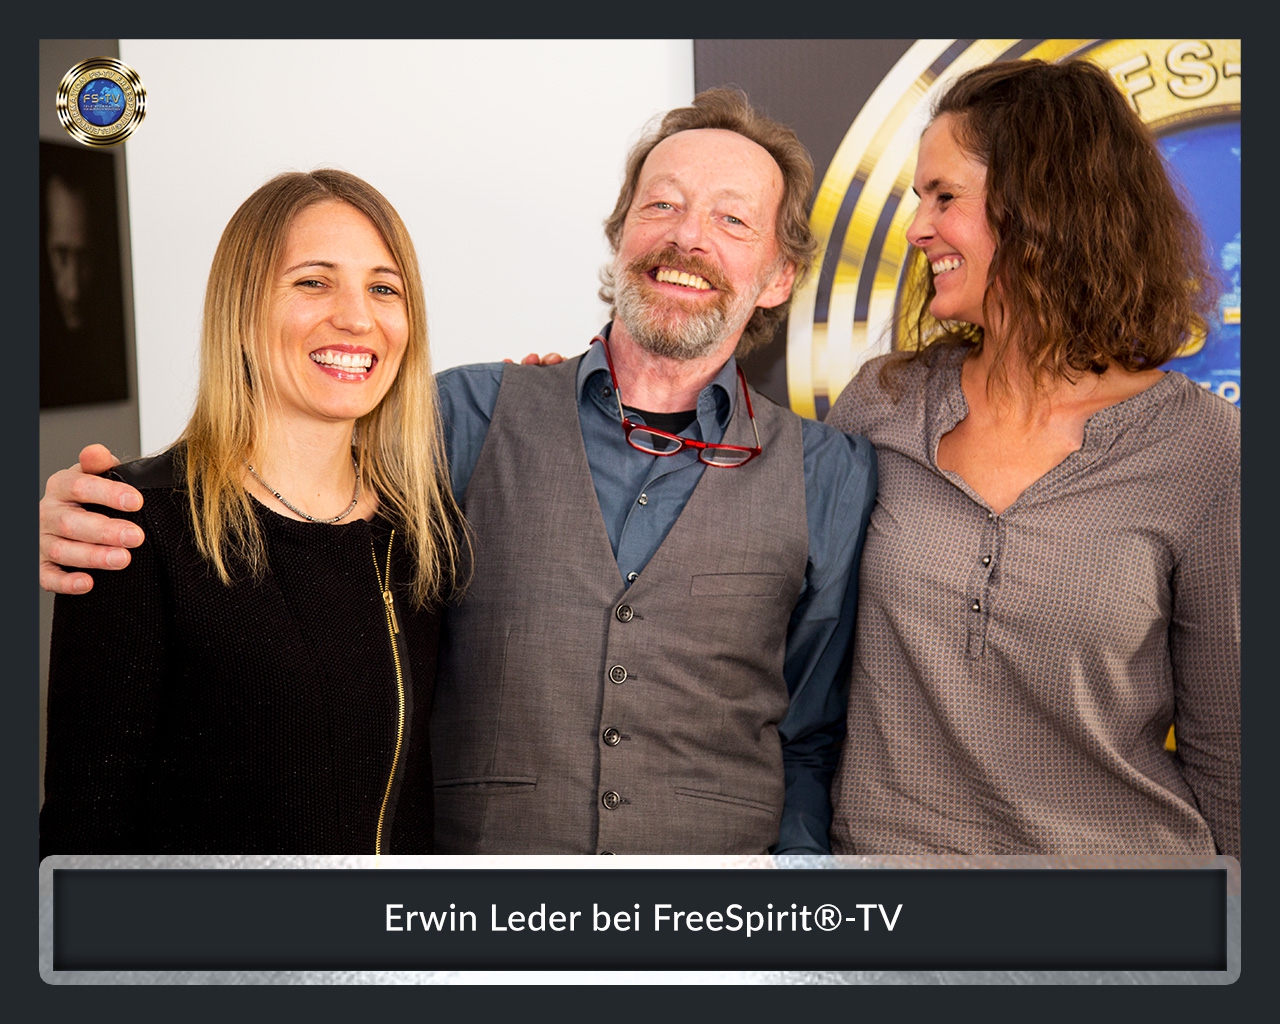 FS-TV-Bildergallerie-Erwin-Leder4